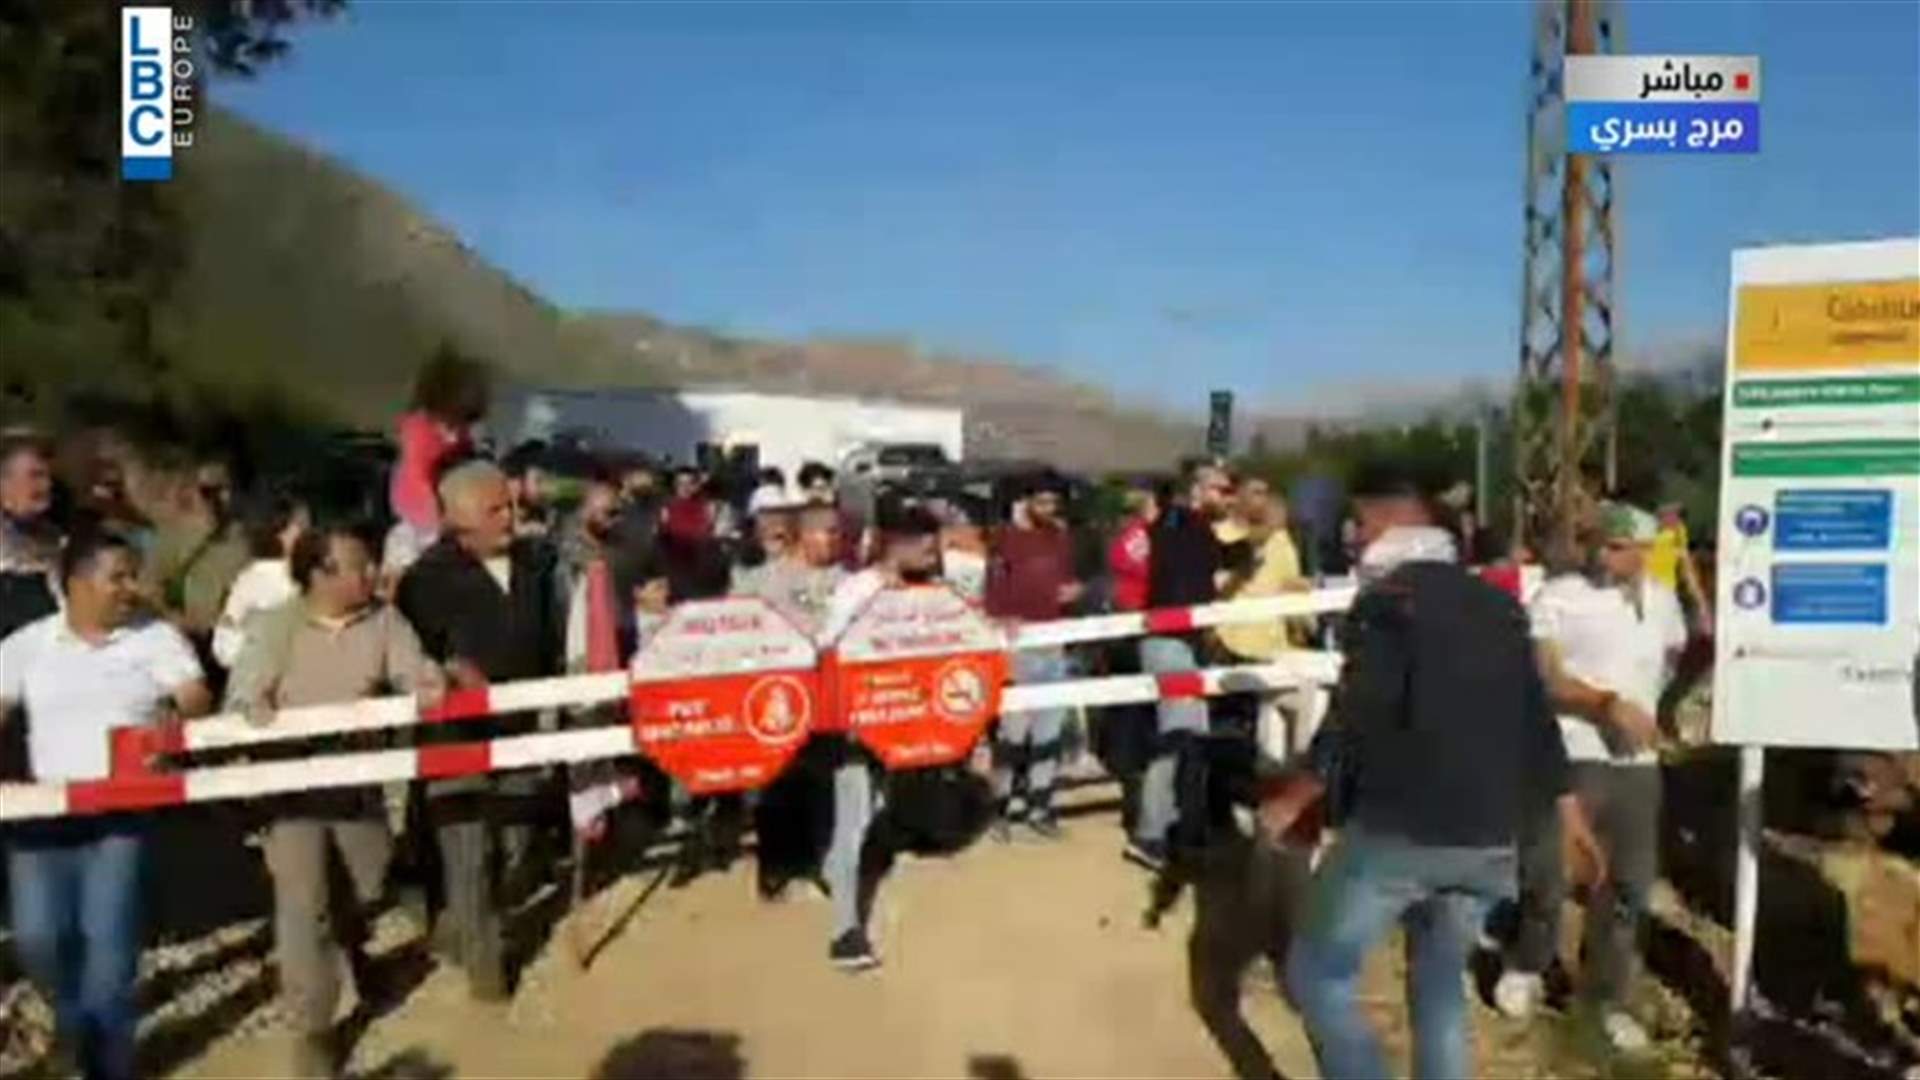 المعتصمون يزيلون البوابة الحديدية في مرج بسري (فيديو)